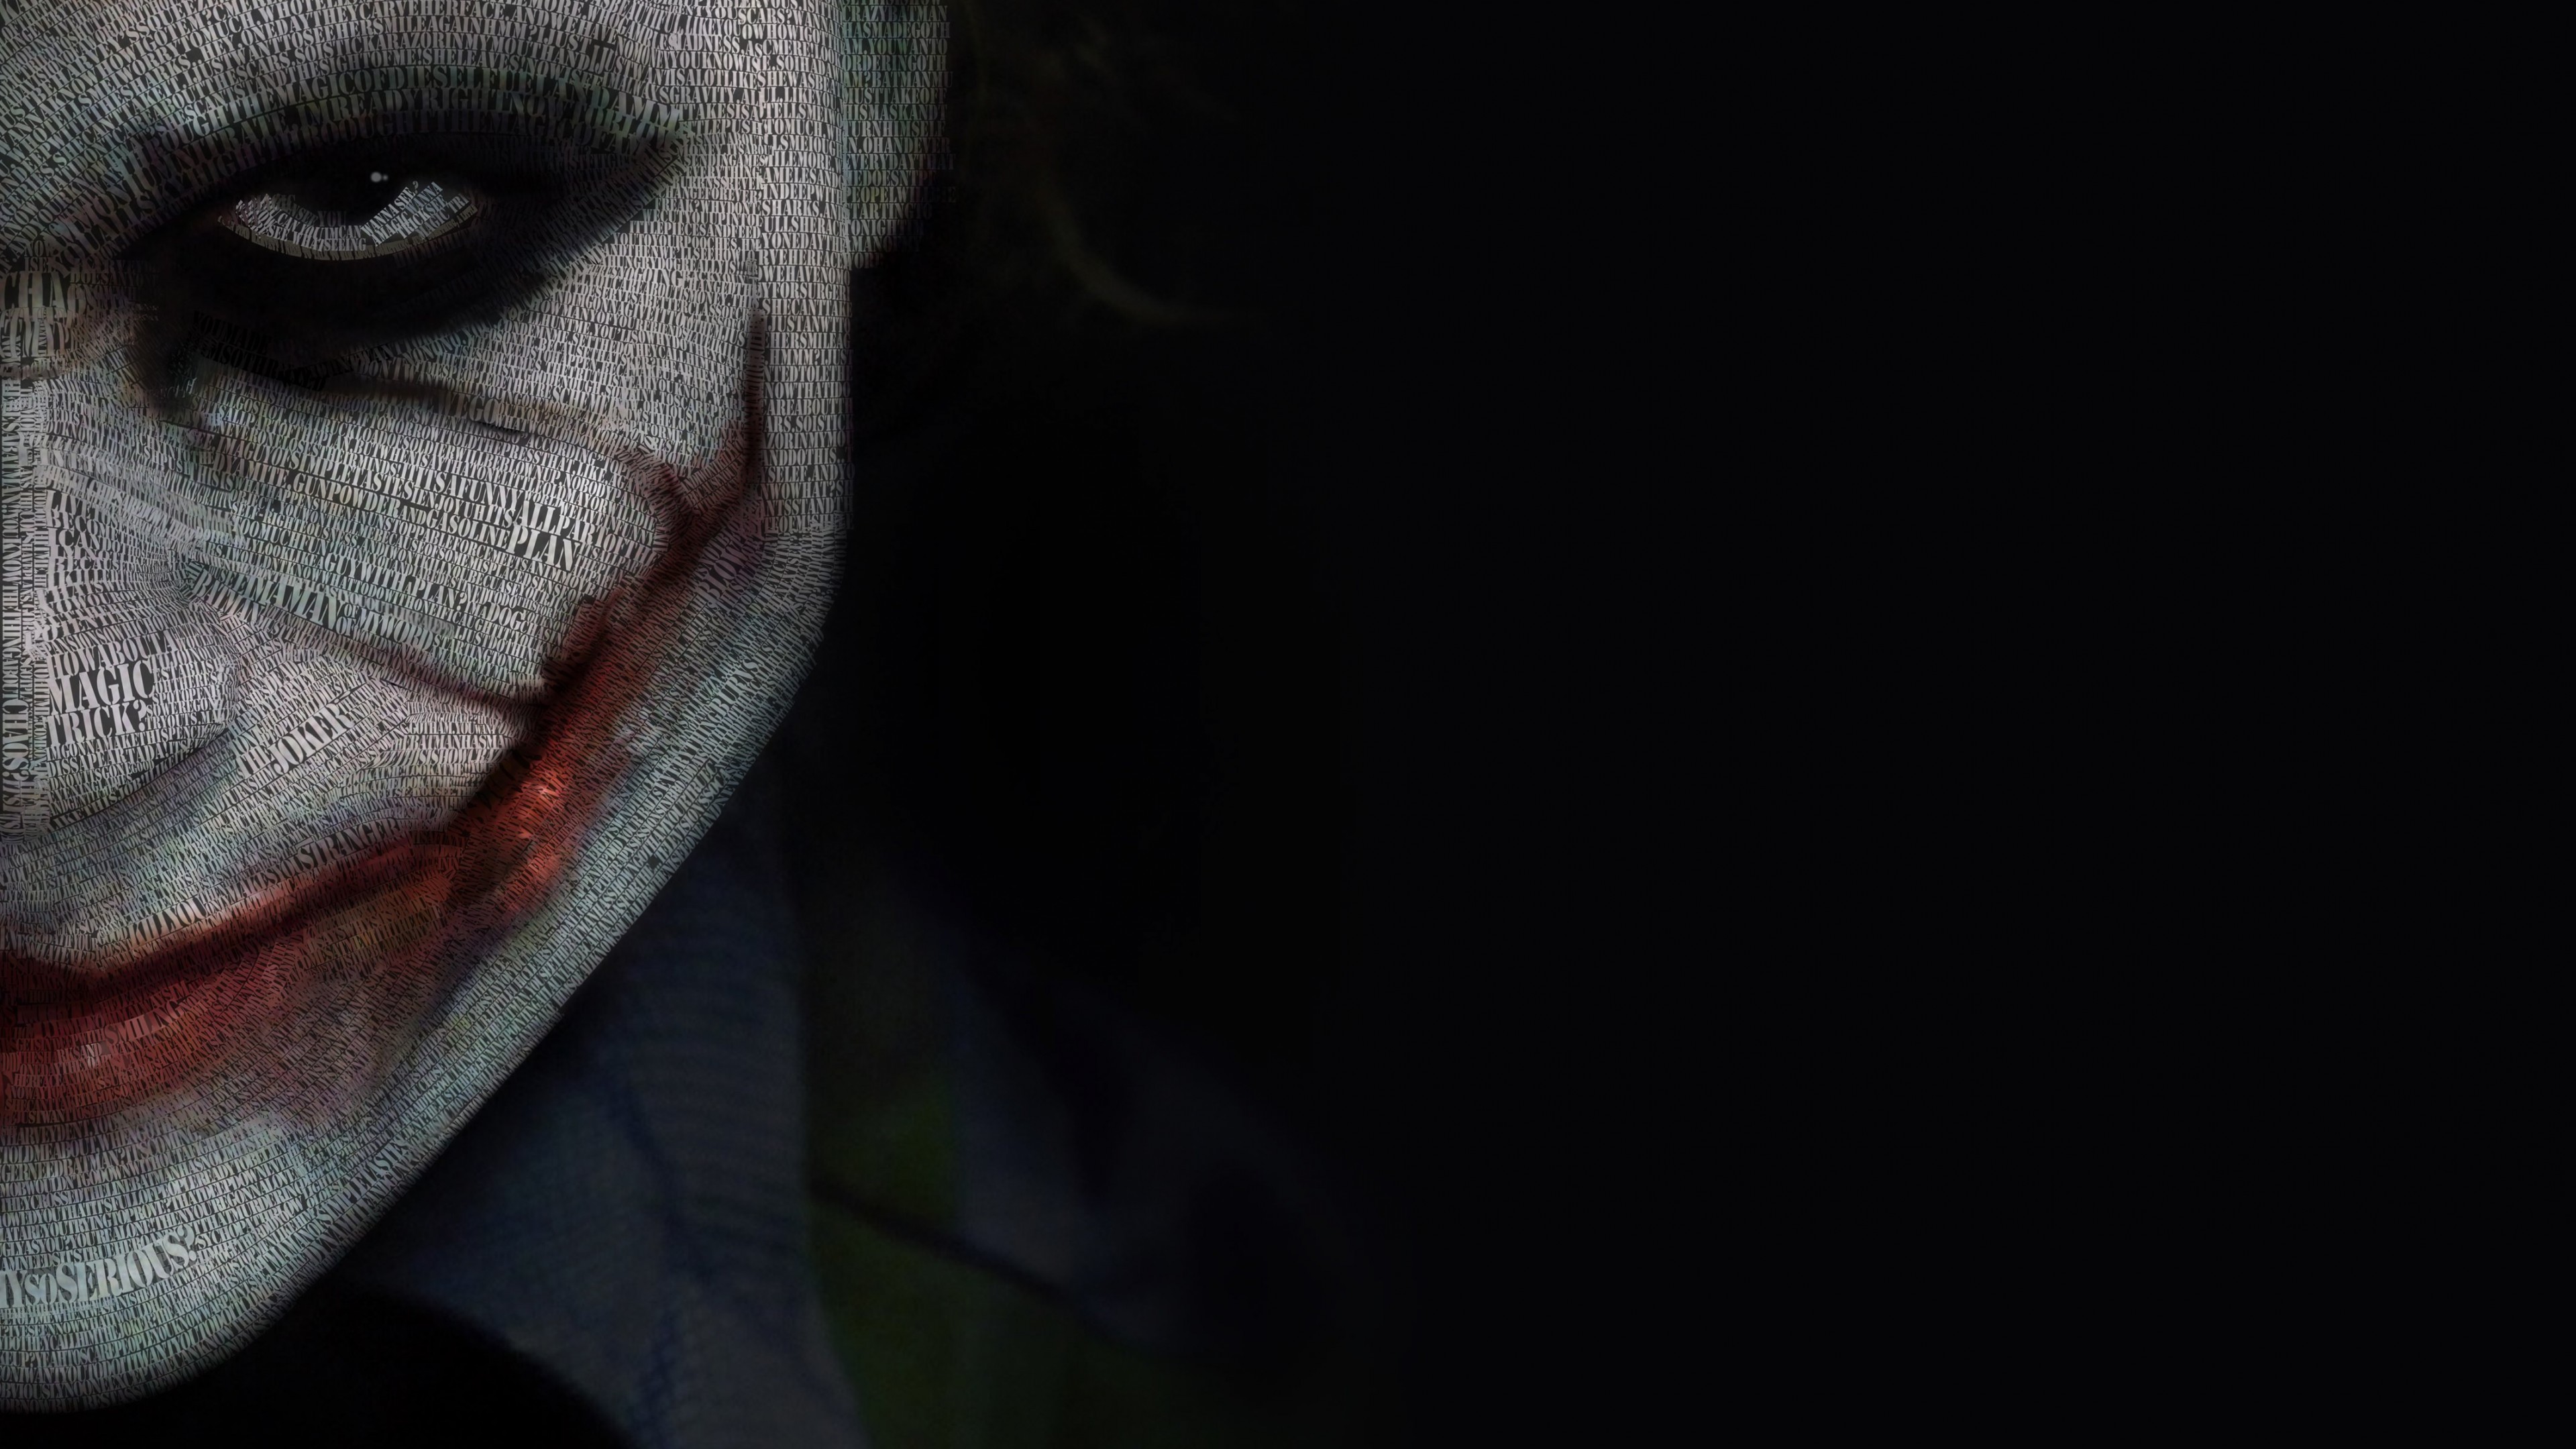 The Joker Typeface Portrait Wallpaper for Desktop 4K 3840x2160